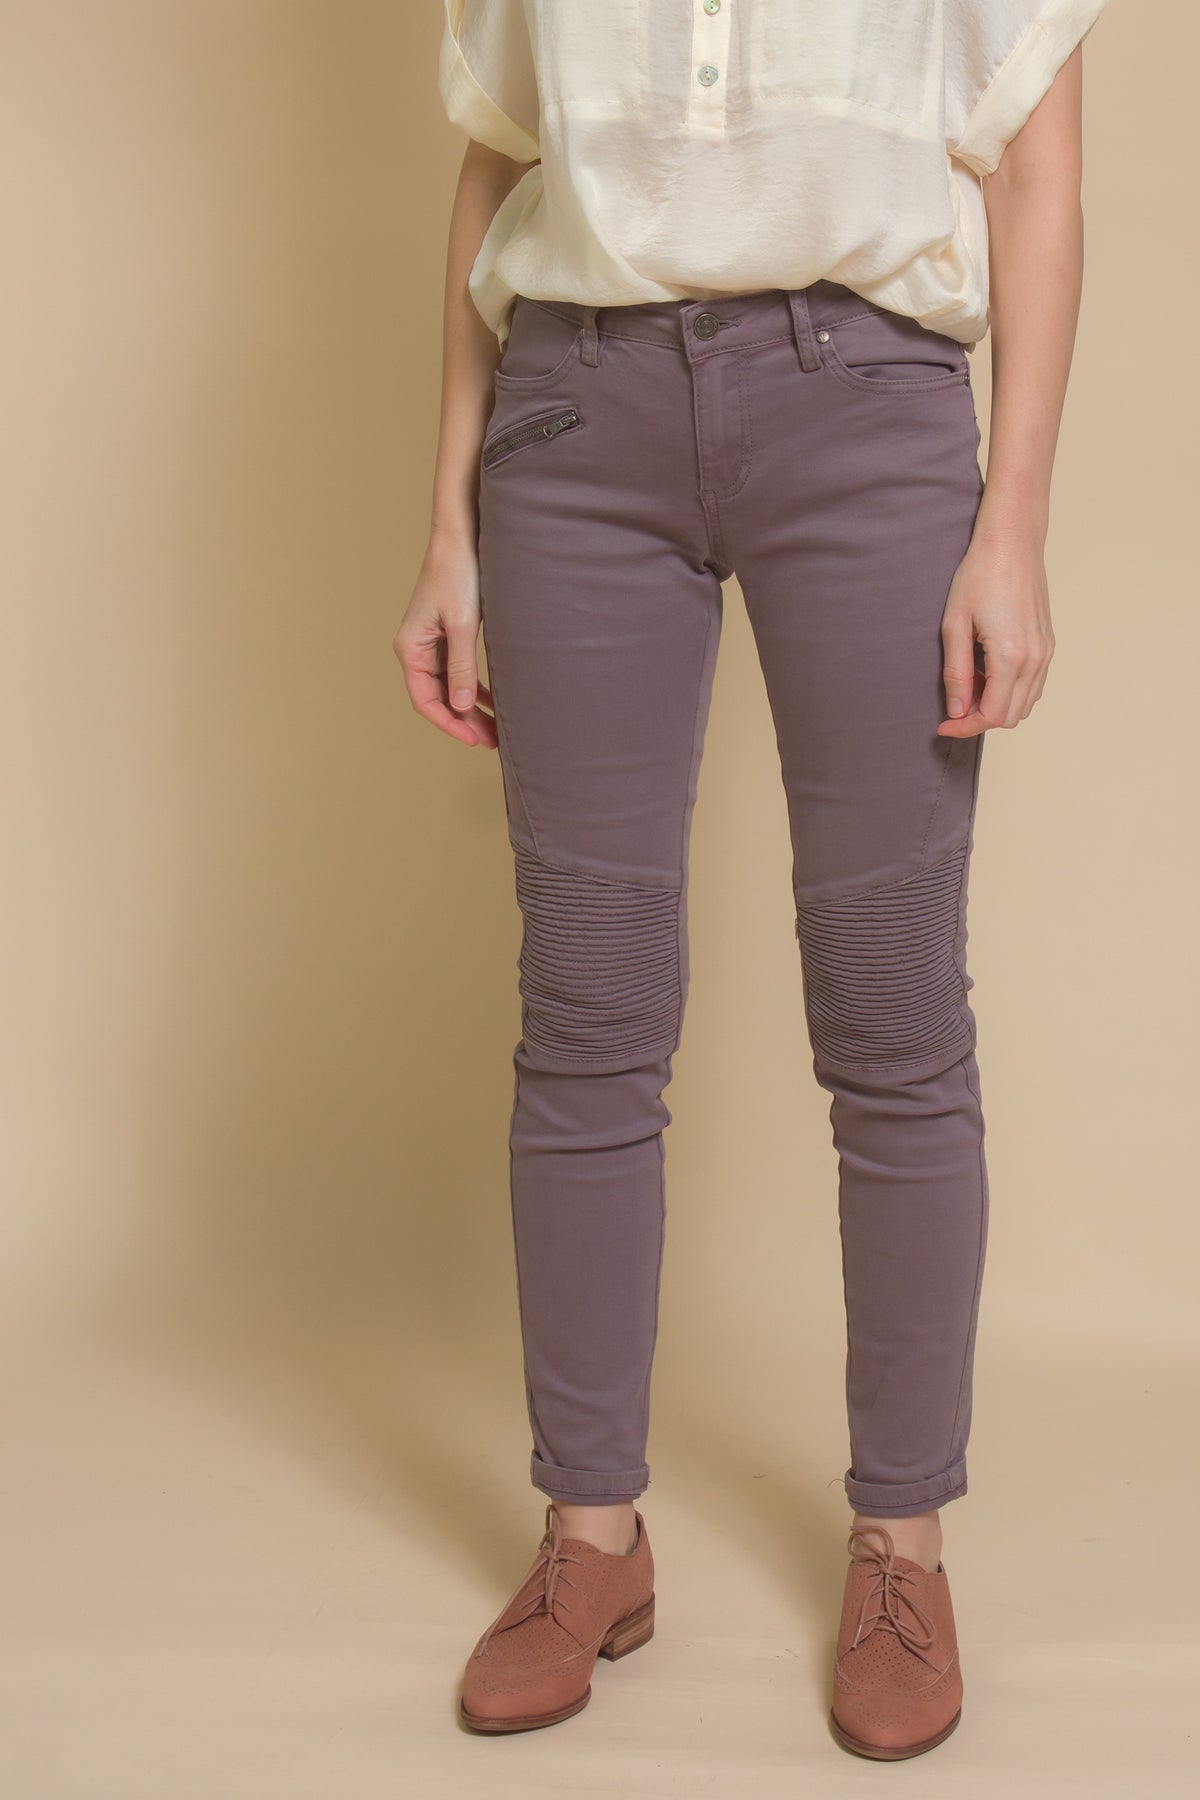 Wishlist denim jeans with textured knees, in midnight.